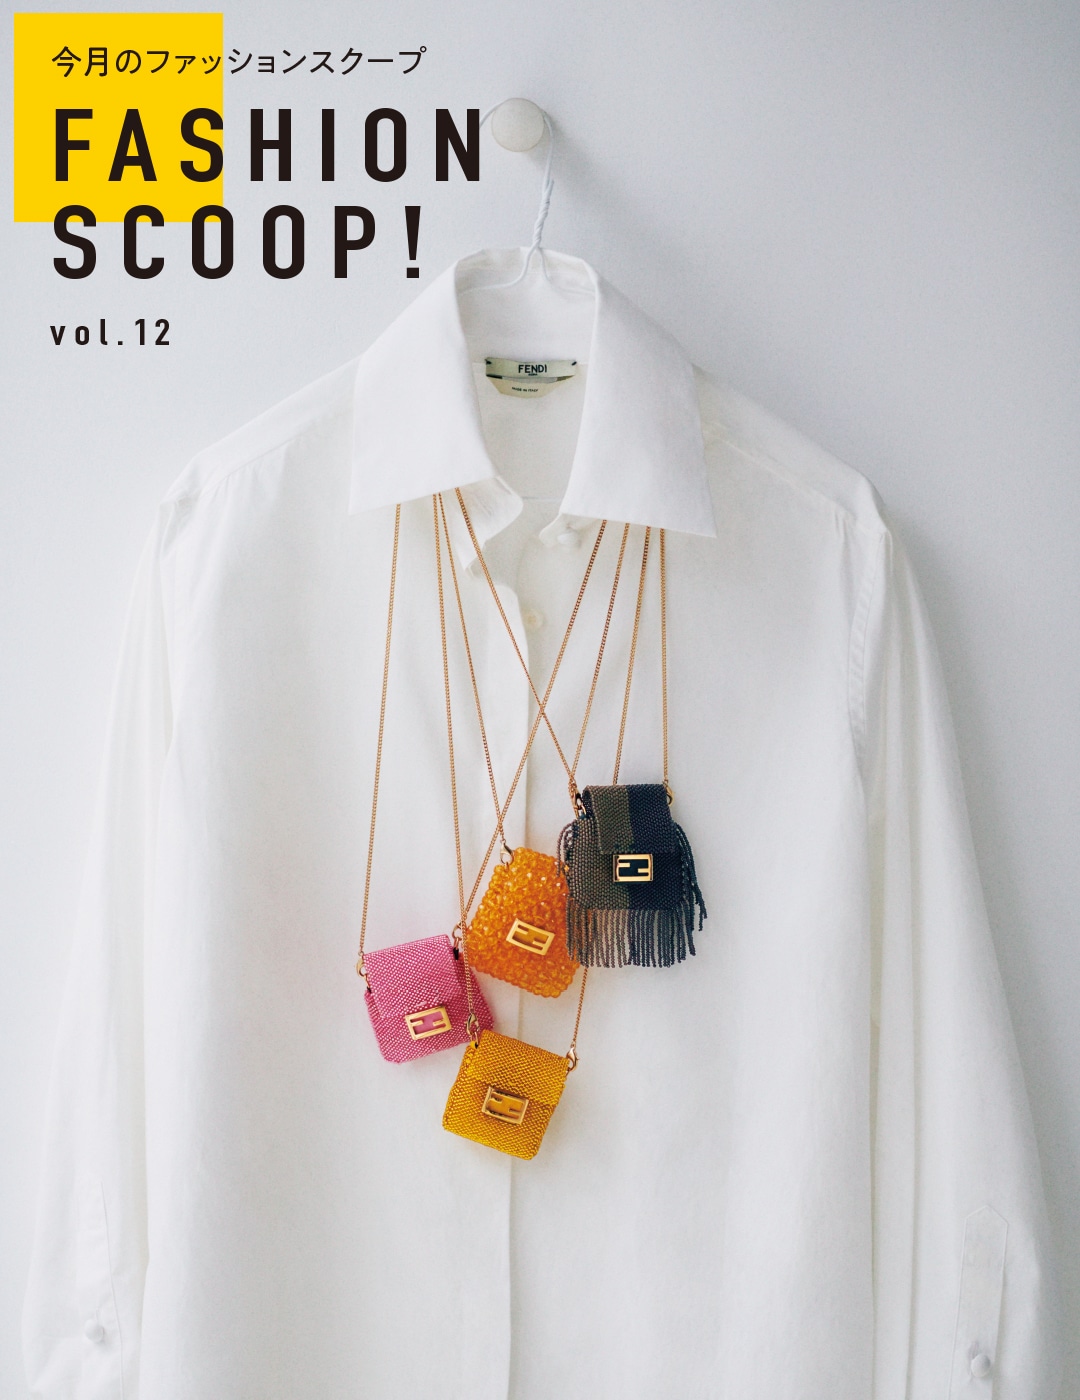 今月のファッションスクープ FASHION SCOOP! vol.12